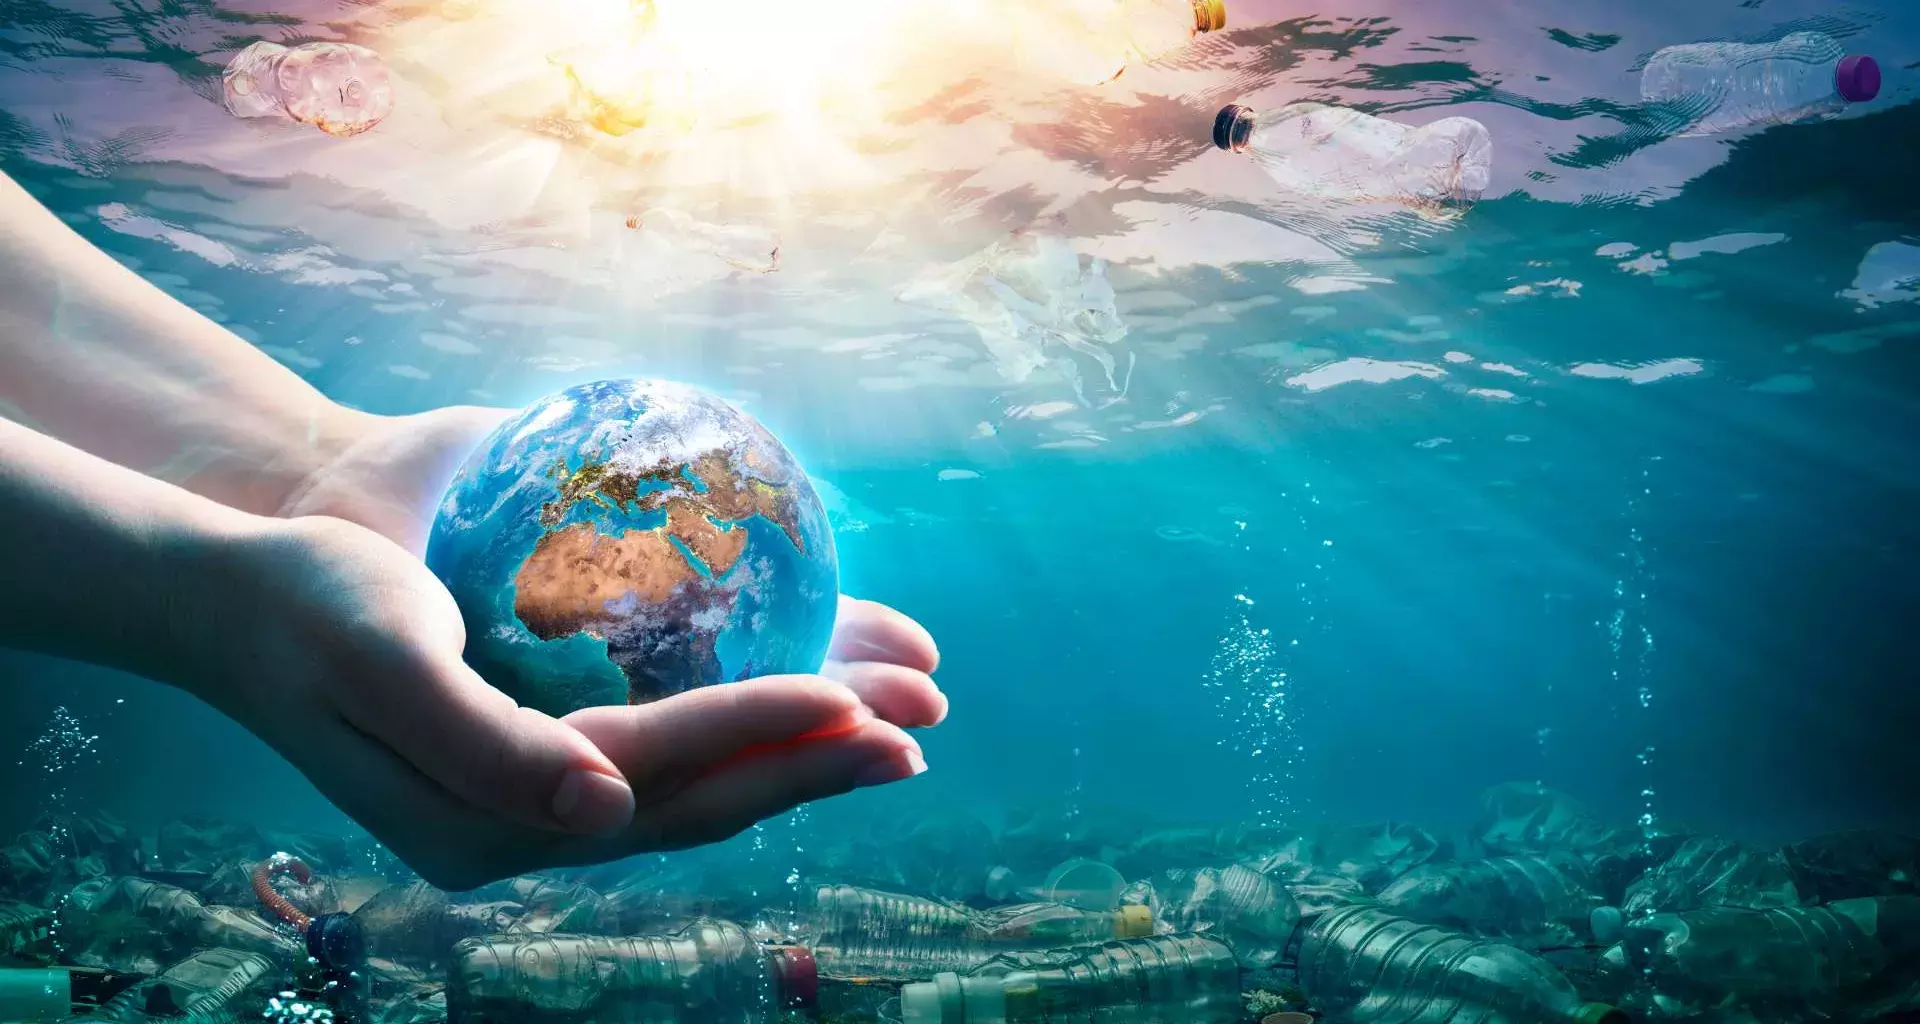 Imagen del mar contaminado con plástico, con una mano sosteniendo al mundo, conceptualizando el cuidado que requieren los océanos